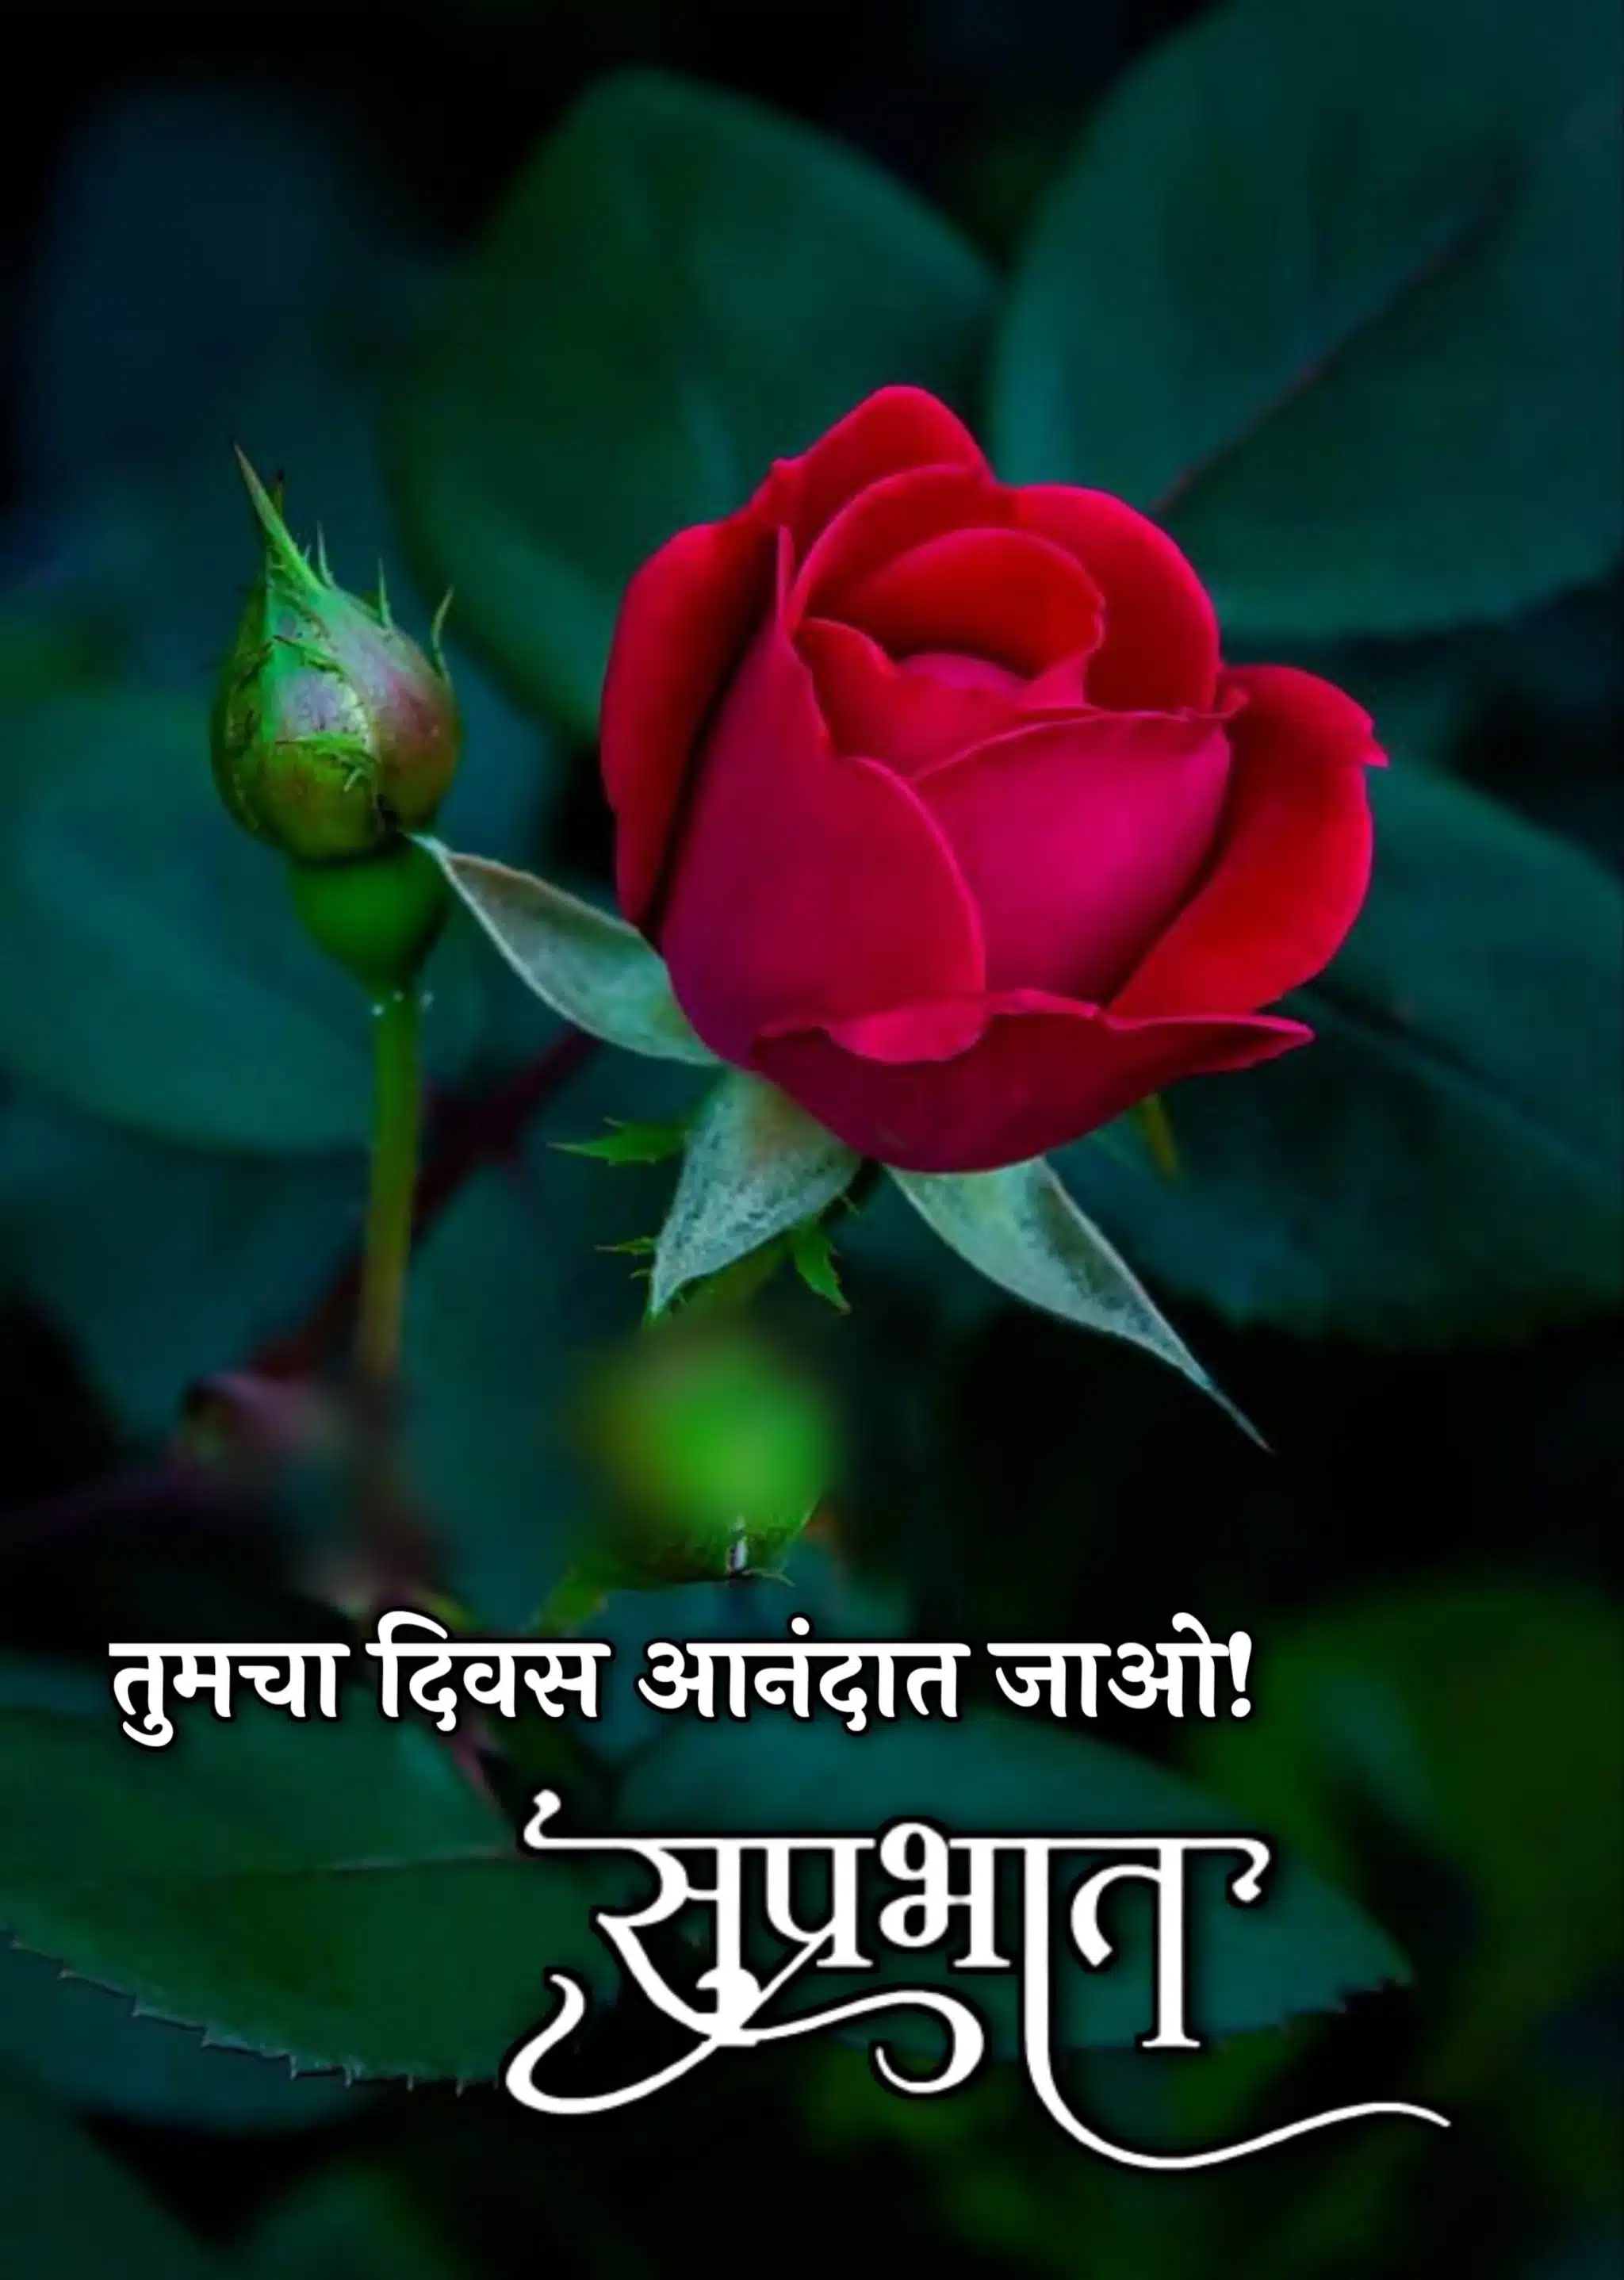 Shubh Sakal Rose Images